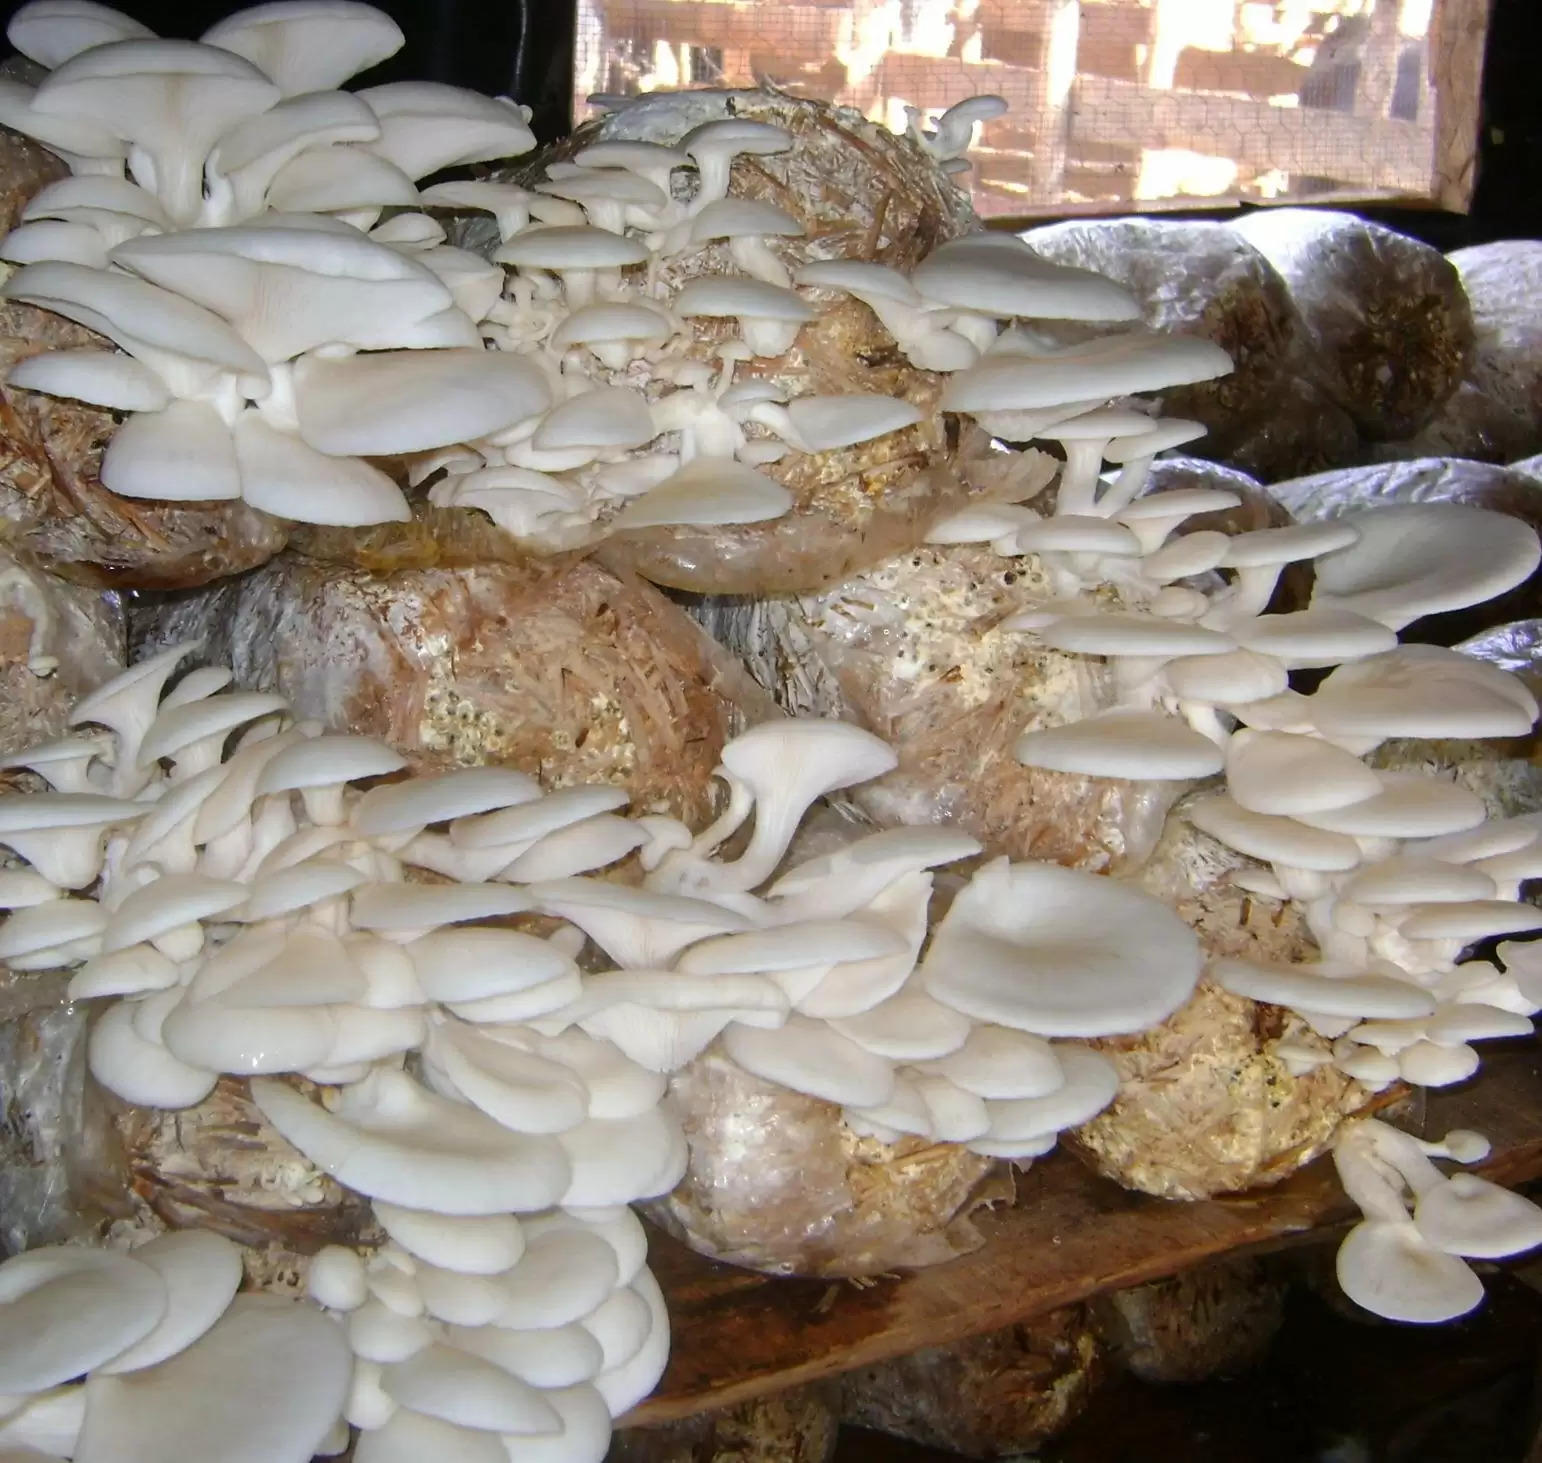 Mushroom Farming: पढ़ें मशरूम की खेती की शुरुआत से लेकर बाजार तक पहुंचाने तक की पूरी जानकारी